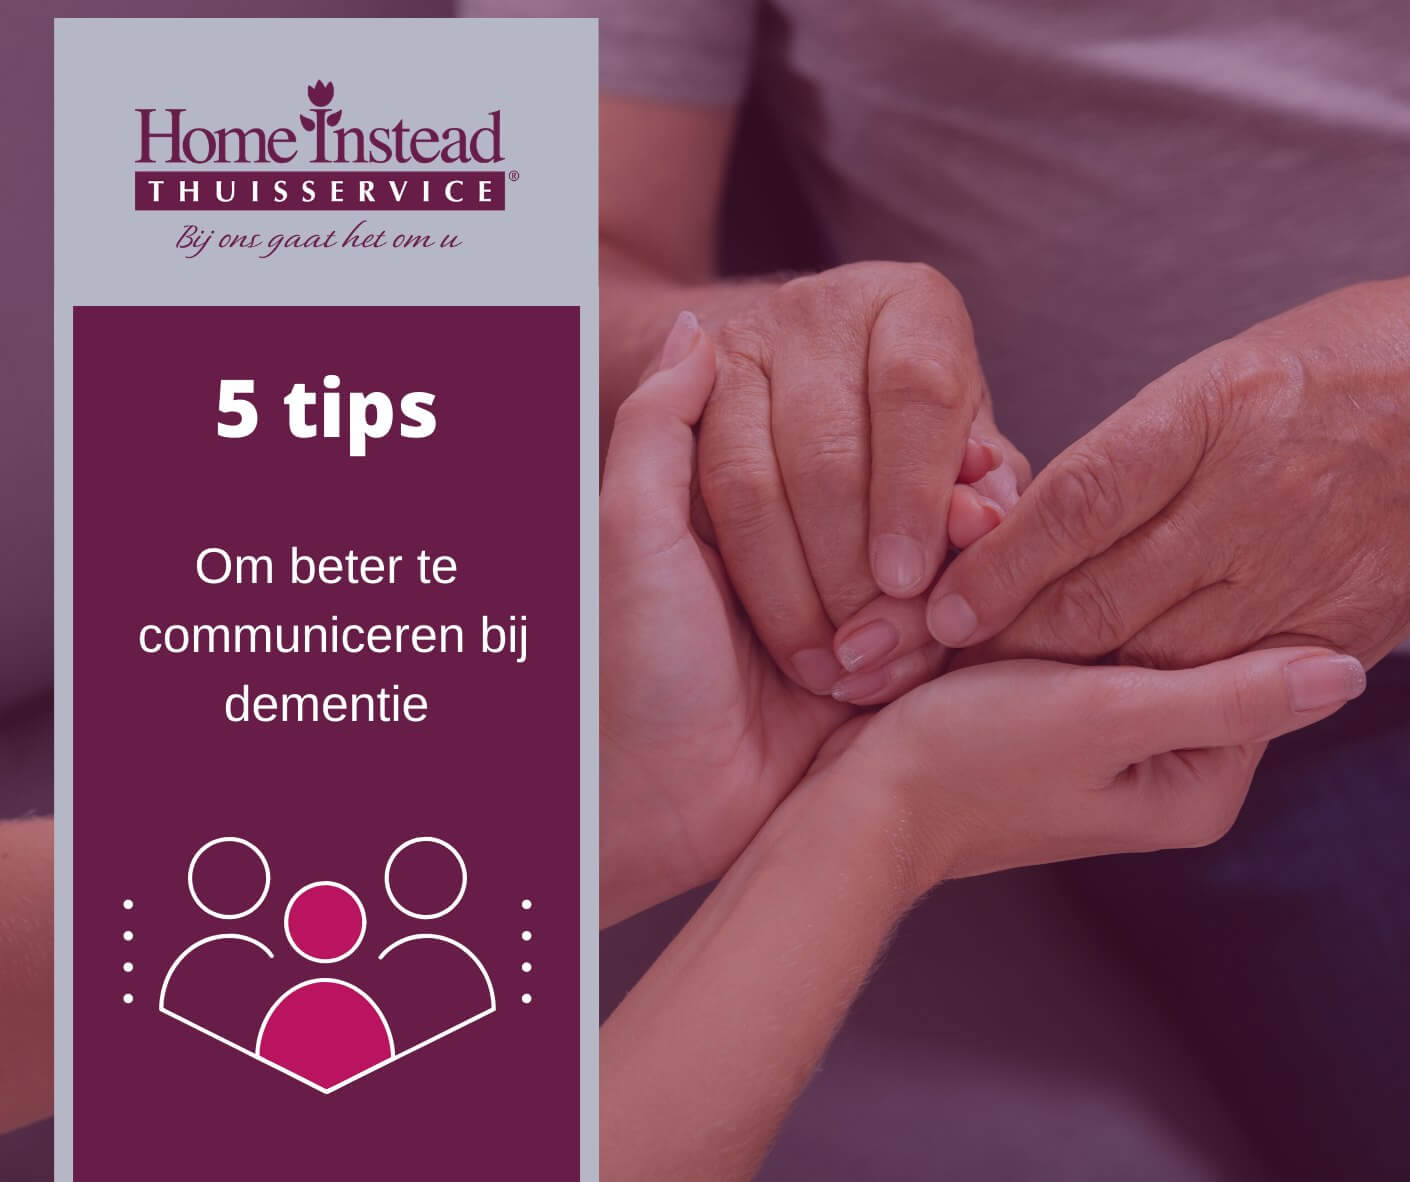 5 tips om beter communiceren bij dementie - Home Instead